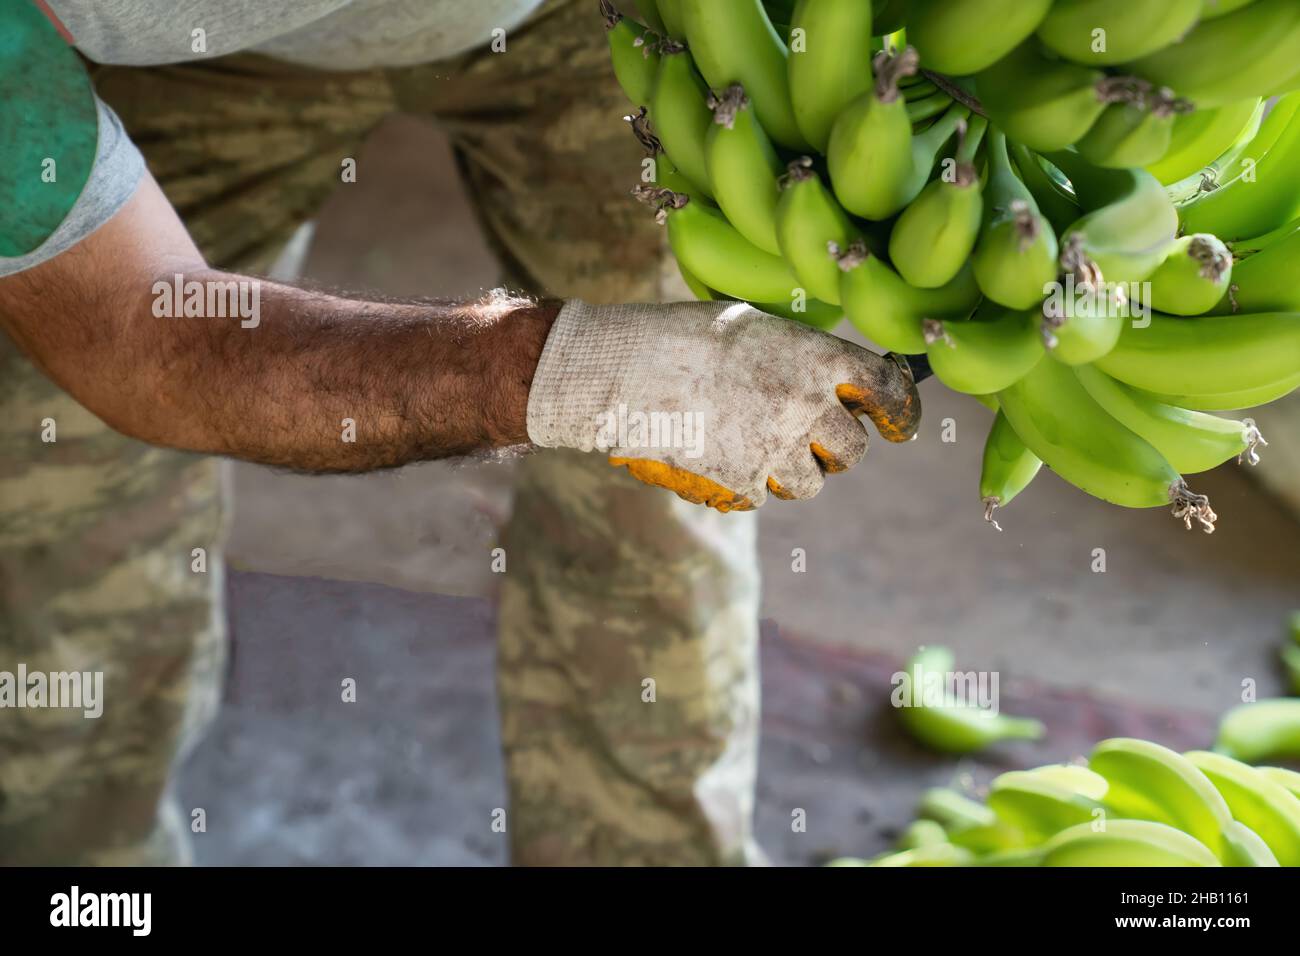 Bananenindustrie. Mann in Arbeitshandschuhen Arten von grünen Bananen. Vorbereitung von Bananen für den Großhandel.. Seitenansicht. Stockfoto